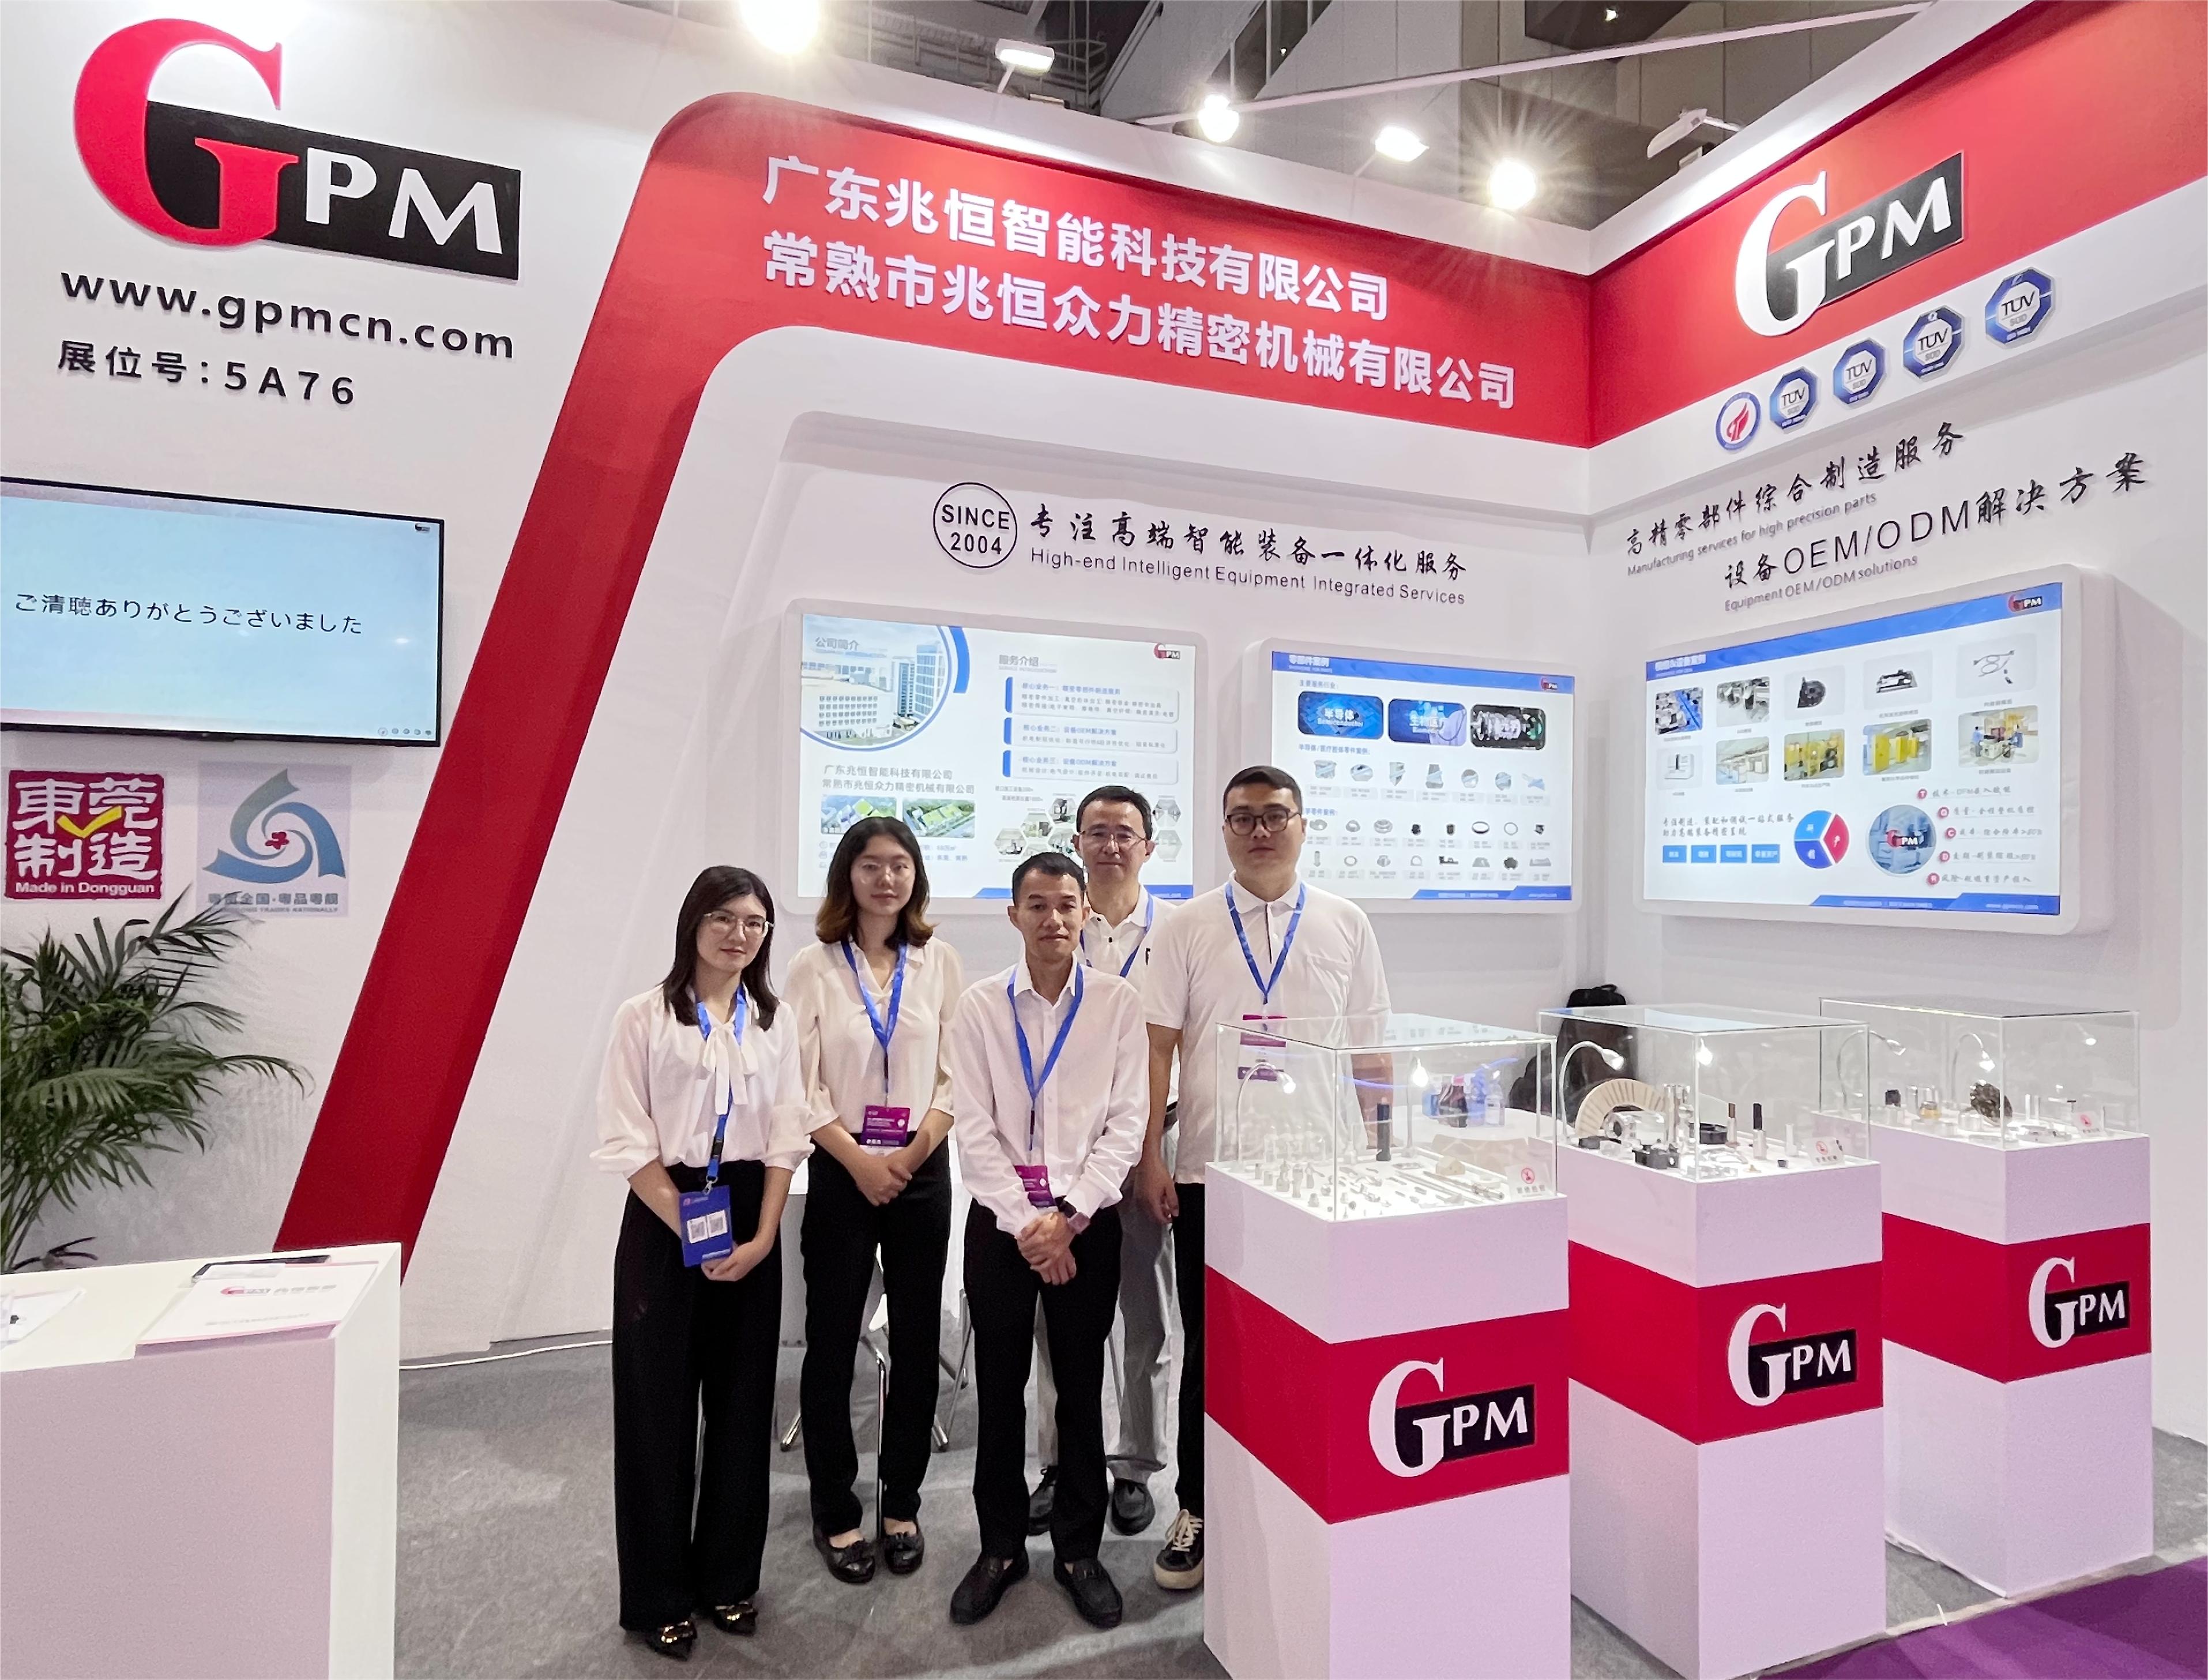 GPM présente une technologie de pointe à l'exposition internationale optoélectronique de Chine